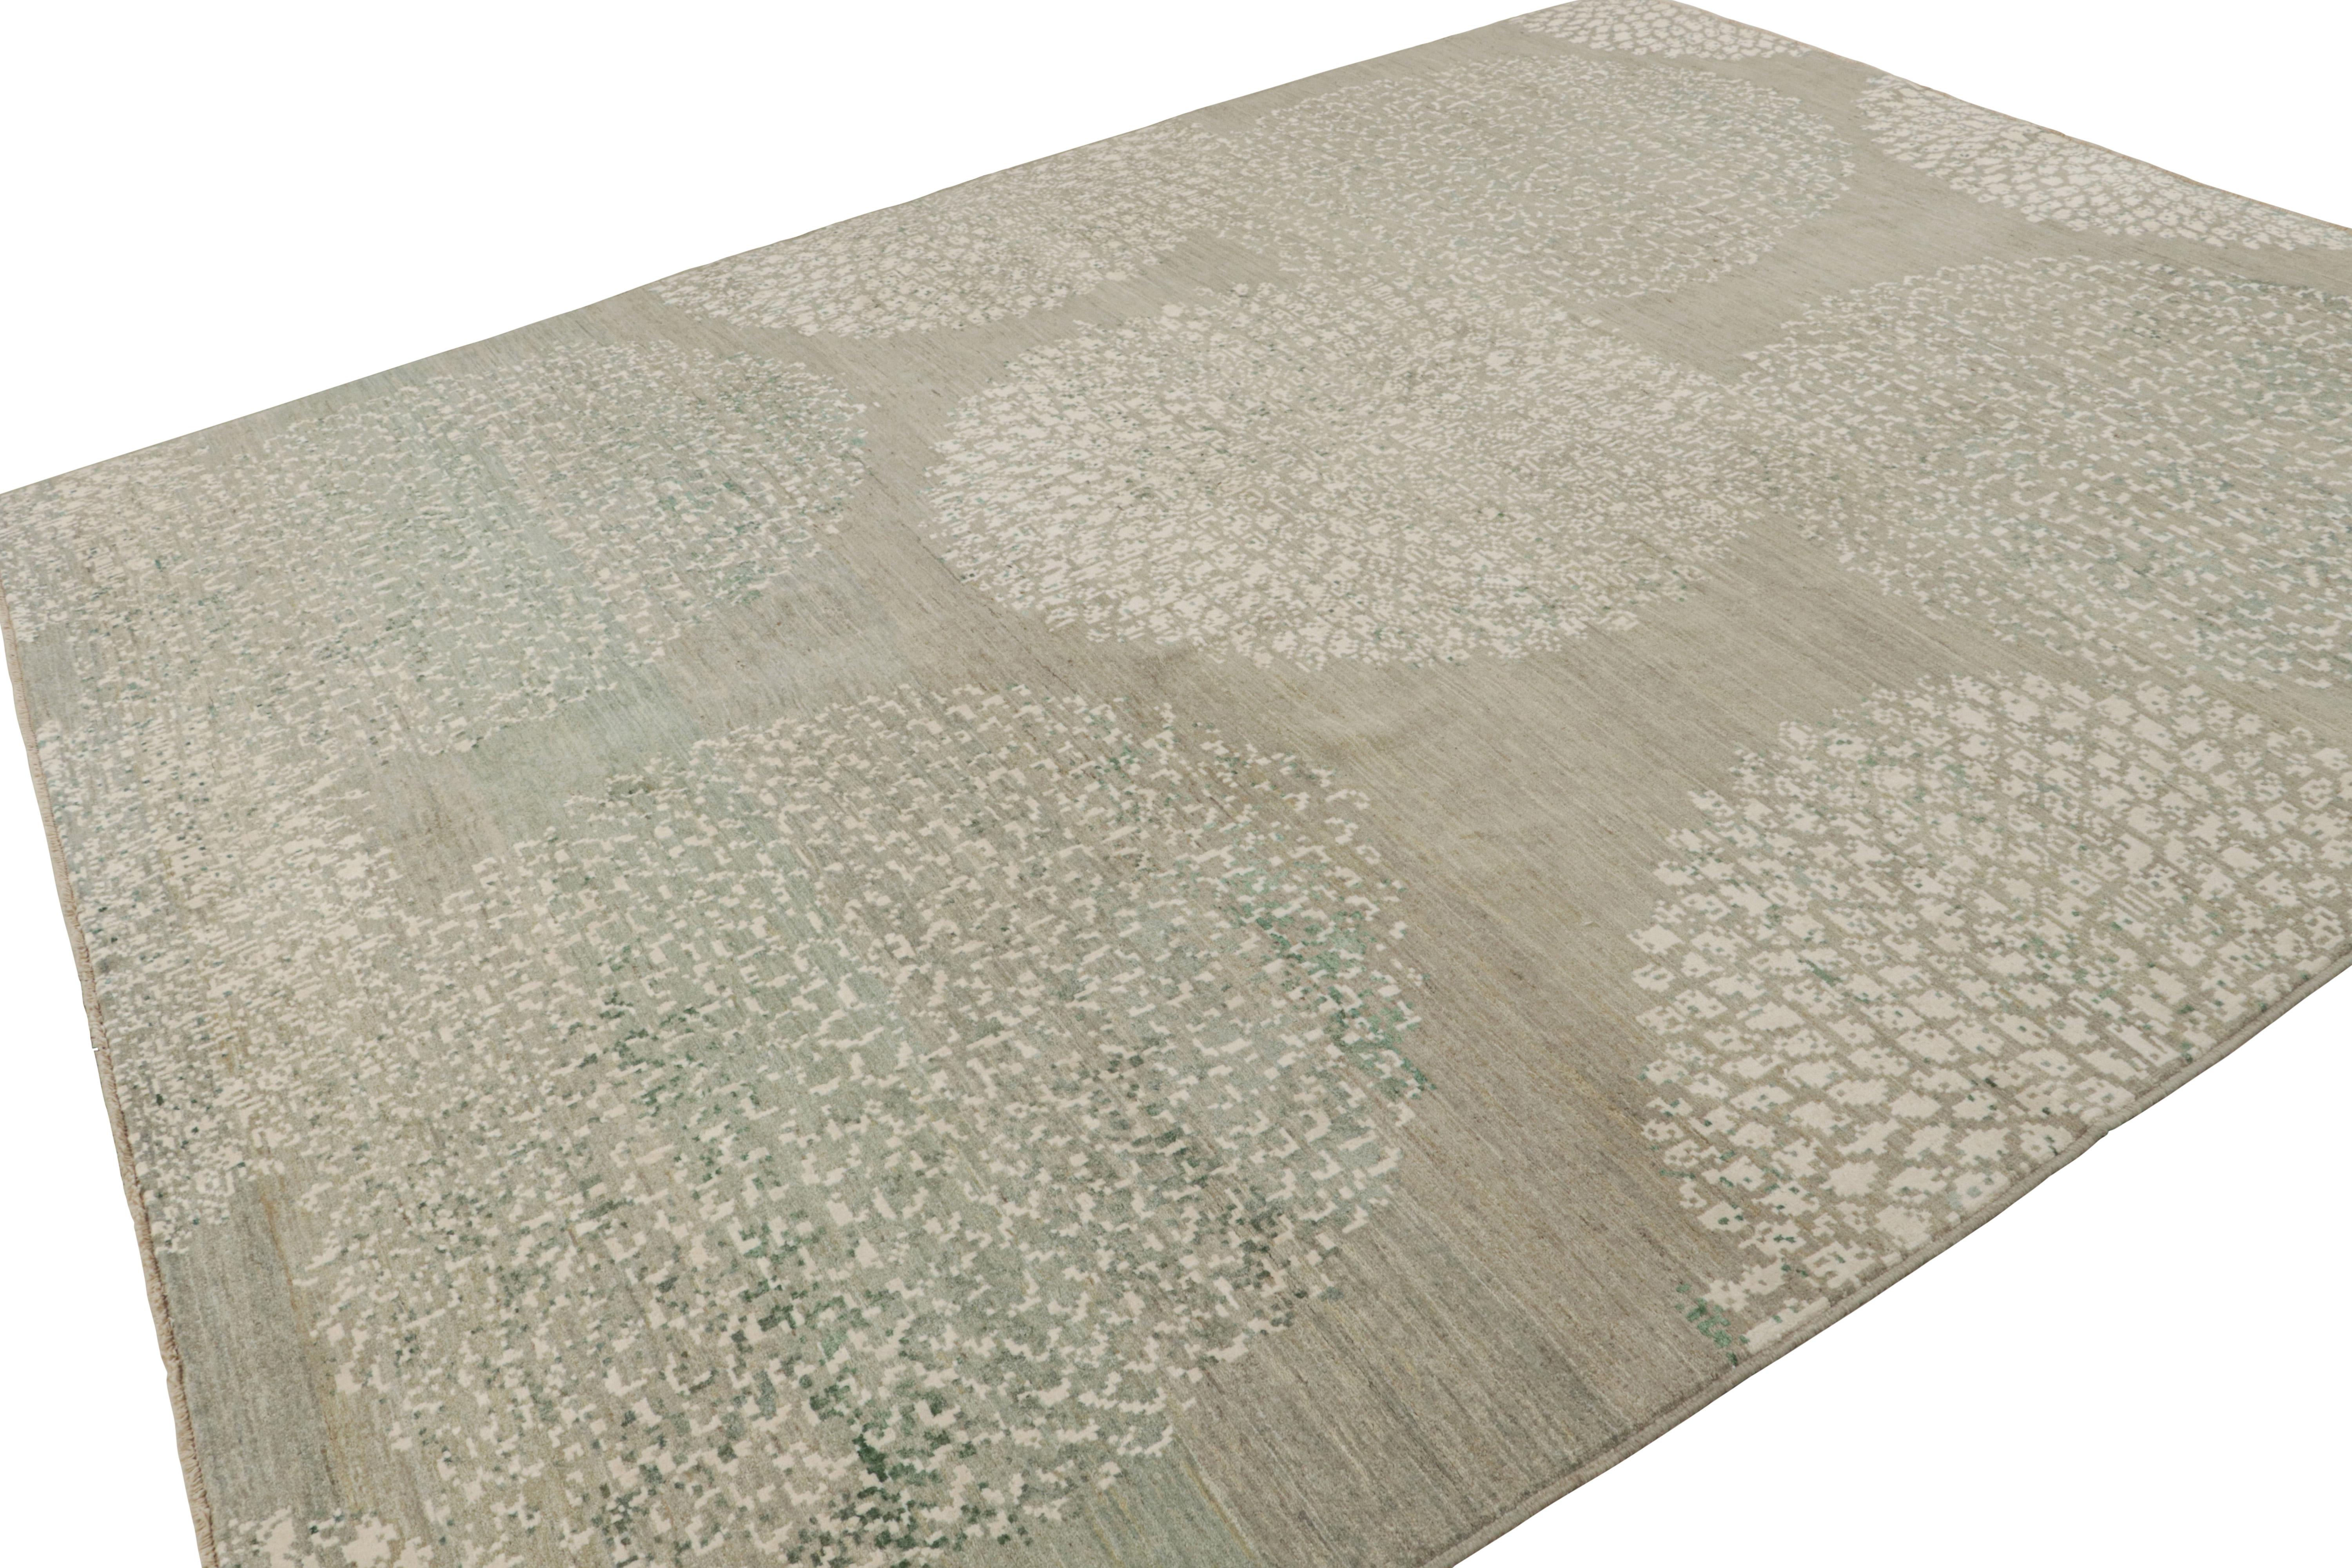 Dieser moderne Teppich im Format 9x12, handgeknüpft aus Baumwolle und Seide, setzt auf minimalistisches Design und Subtilität. Er besticht durch beige und graue Untertöne mit cremefarbenen und grünen Streifen und geometrischen Mustern.  

Über das